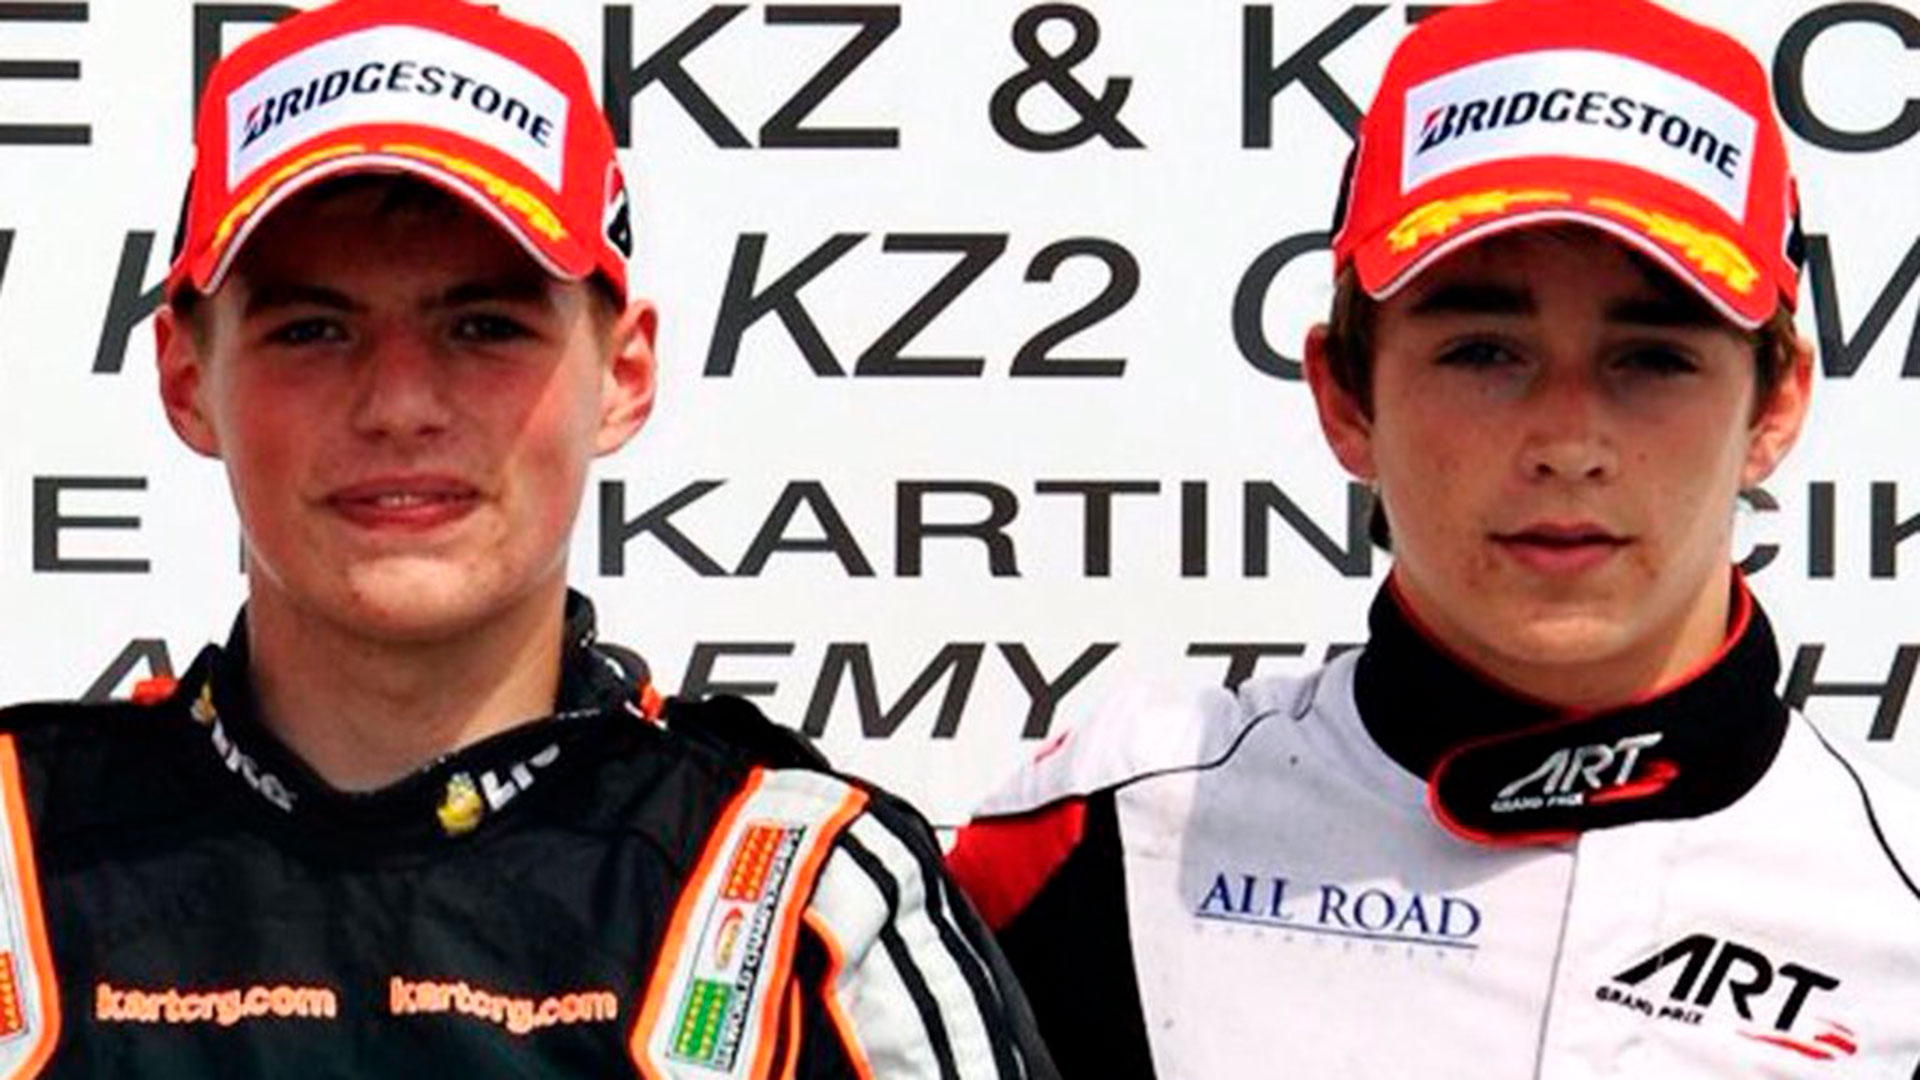 Touches sur les pistes de karting et déclarations de croisement : c'est  ainsi qu'est né le duel entre Verstappen et Leclerc, qui a aujourd'hui un  charme sur la Formule 1 - Infobae